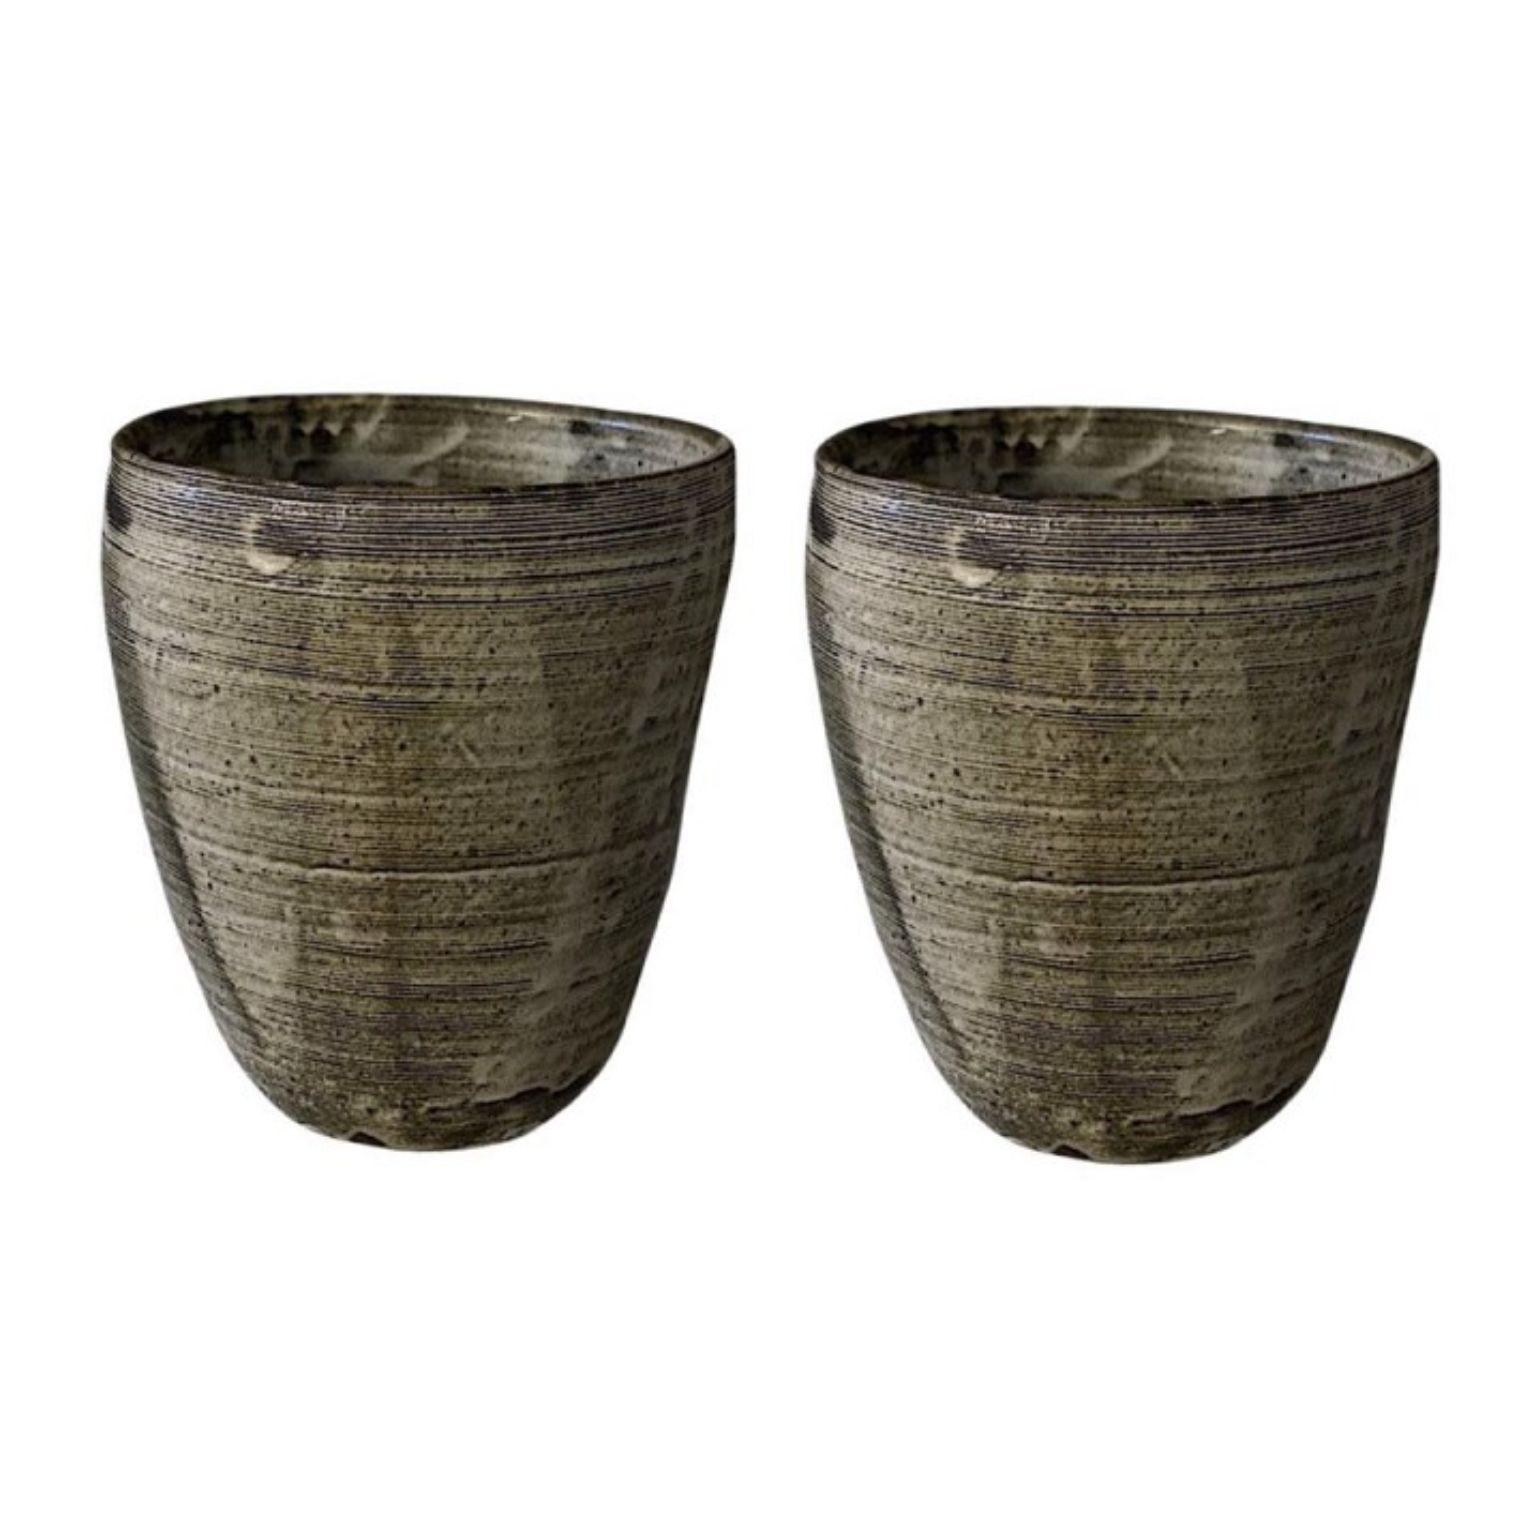 Ensemble de 2 vases artisanaux #2 par Teppei Ono
Dimensions : D 35 x H 40 cm
MATERIAL : Argile, céramique.
Pièce unique

Description
Un grand pot à peigne cuit au feu de bois. Le peigne est fabriqué en creusant des lignes dans la surface de l'argile